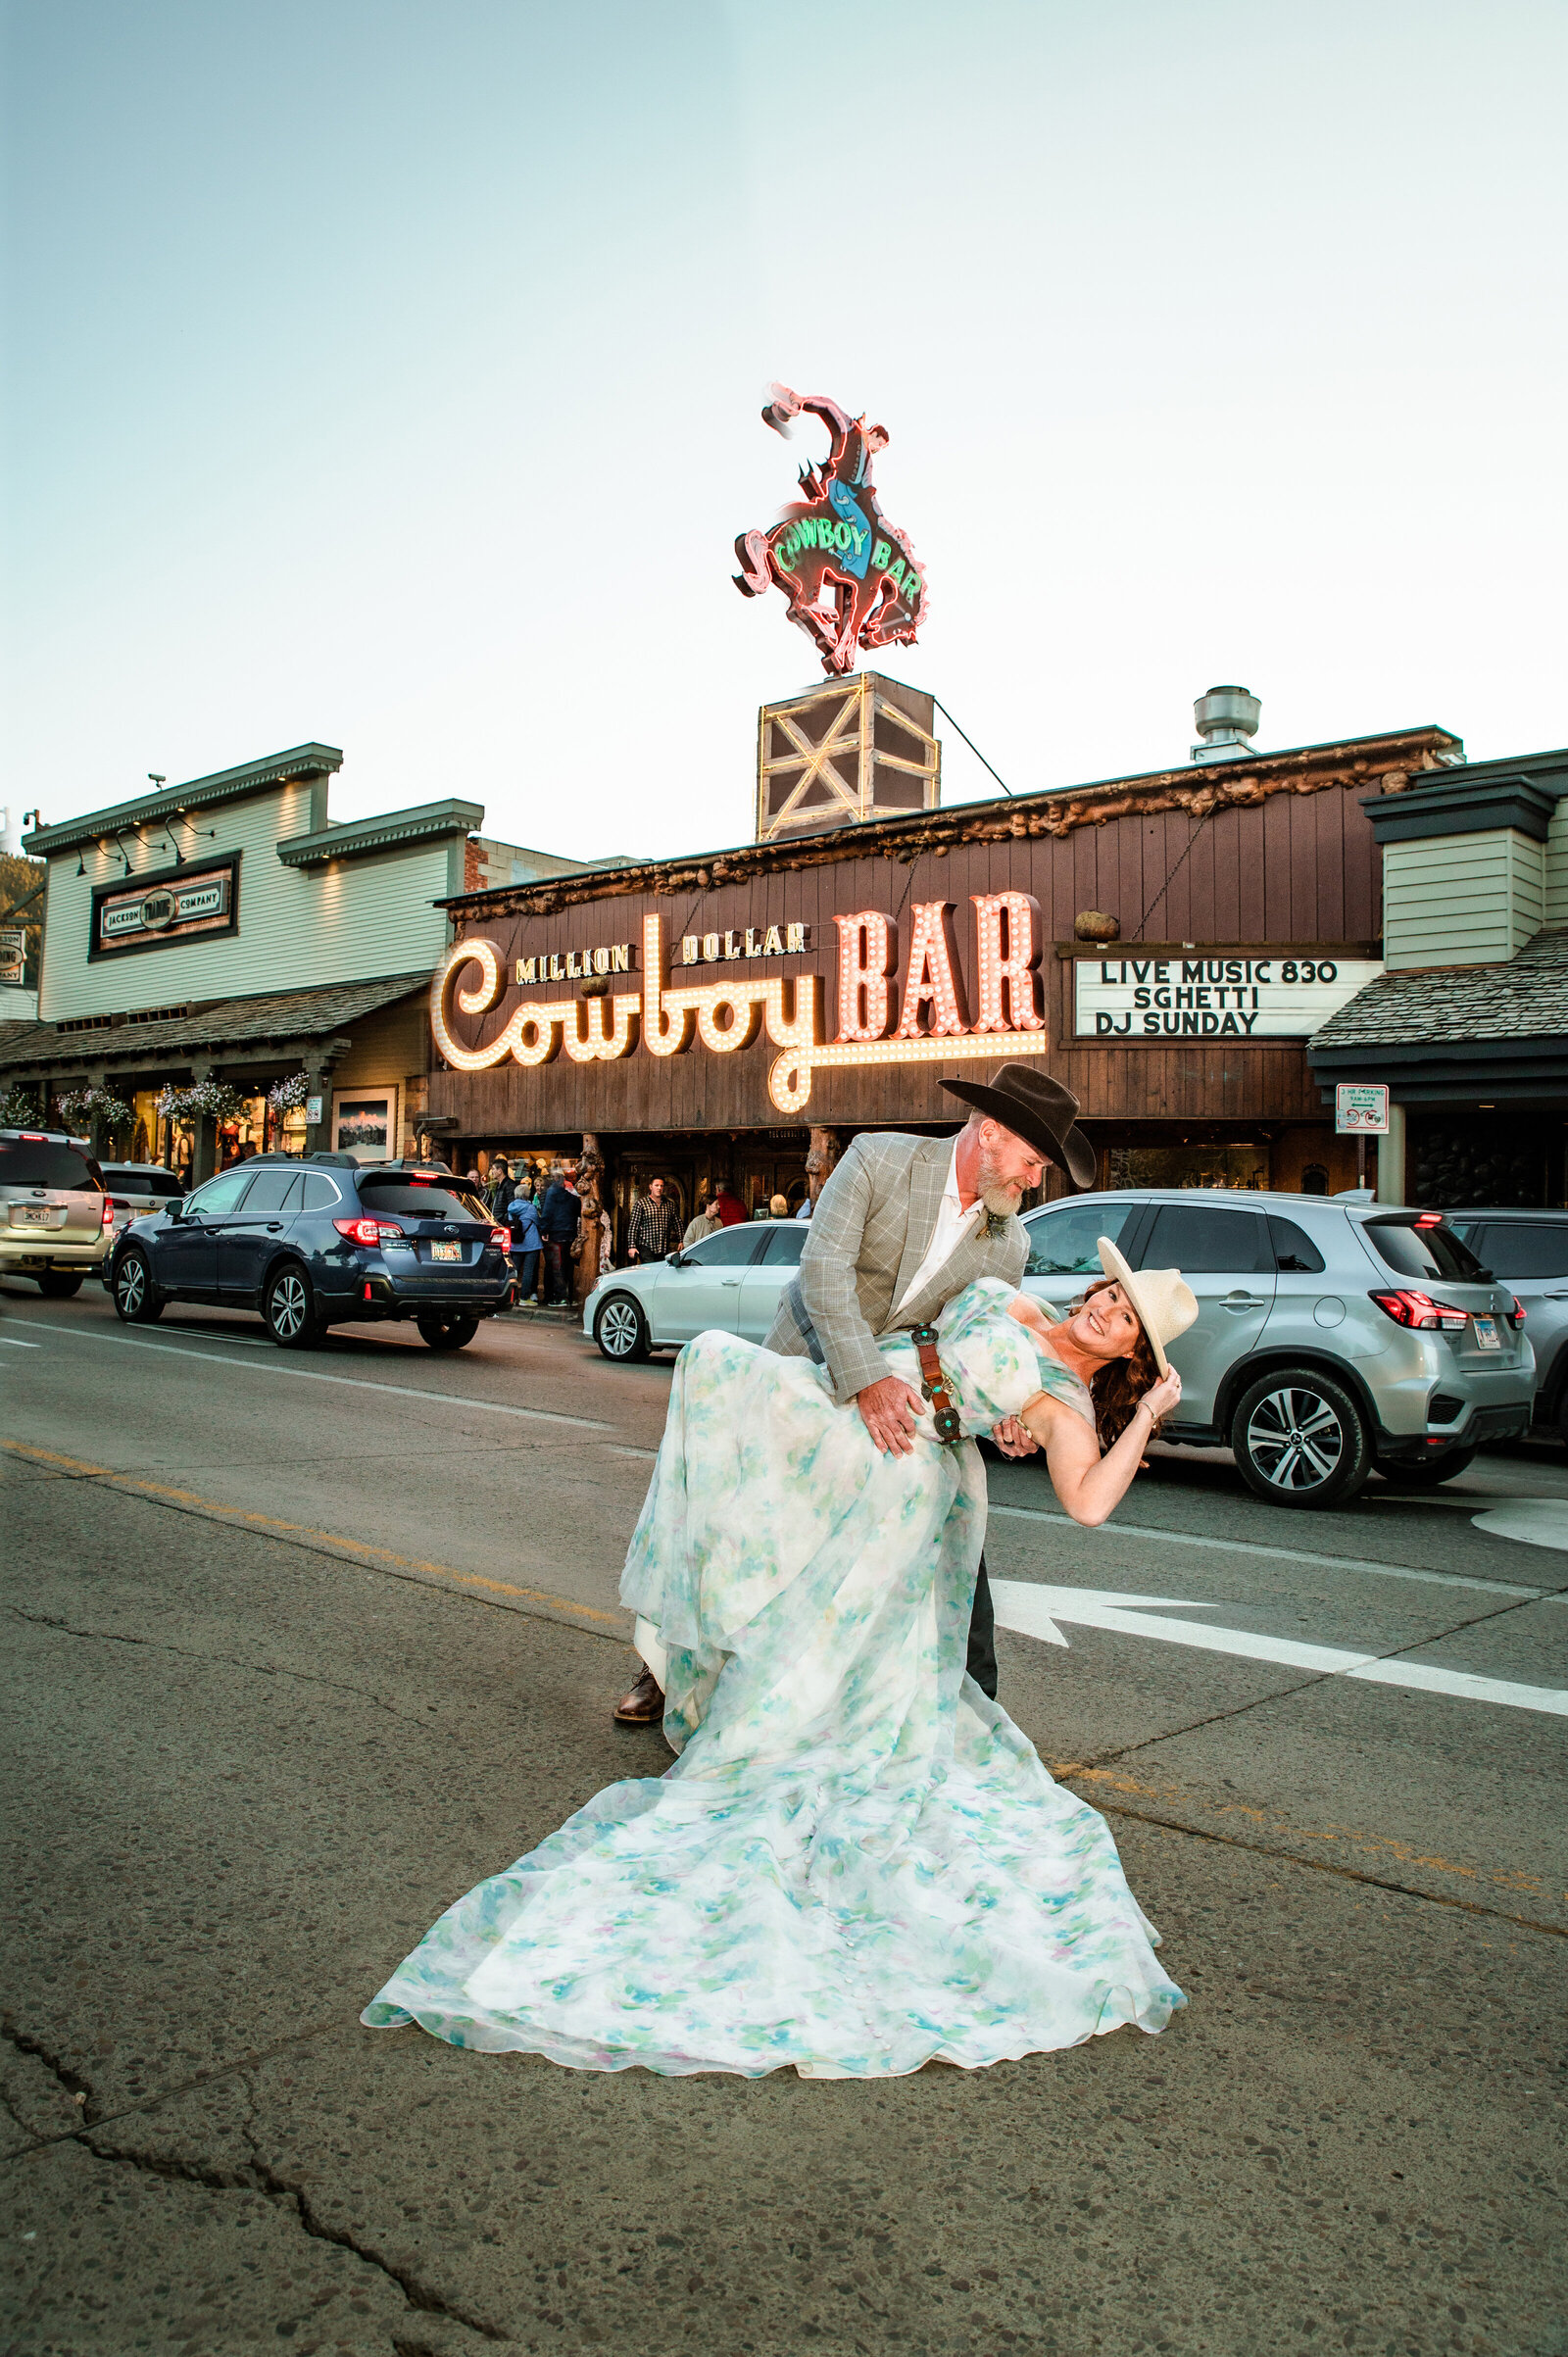 Jackson Hole photographers capture cowboy wedding in Jackson Hole